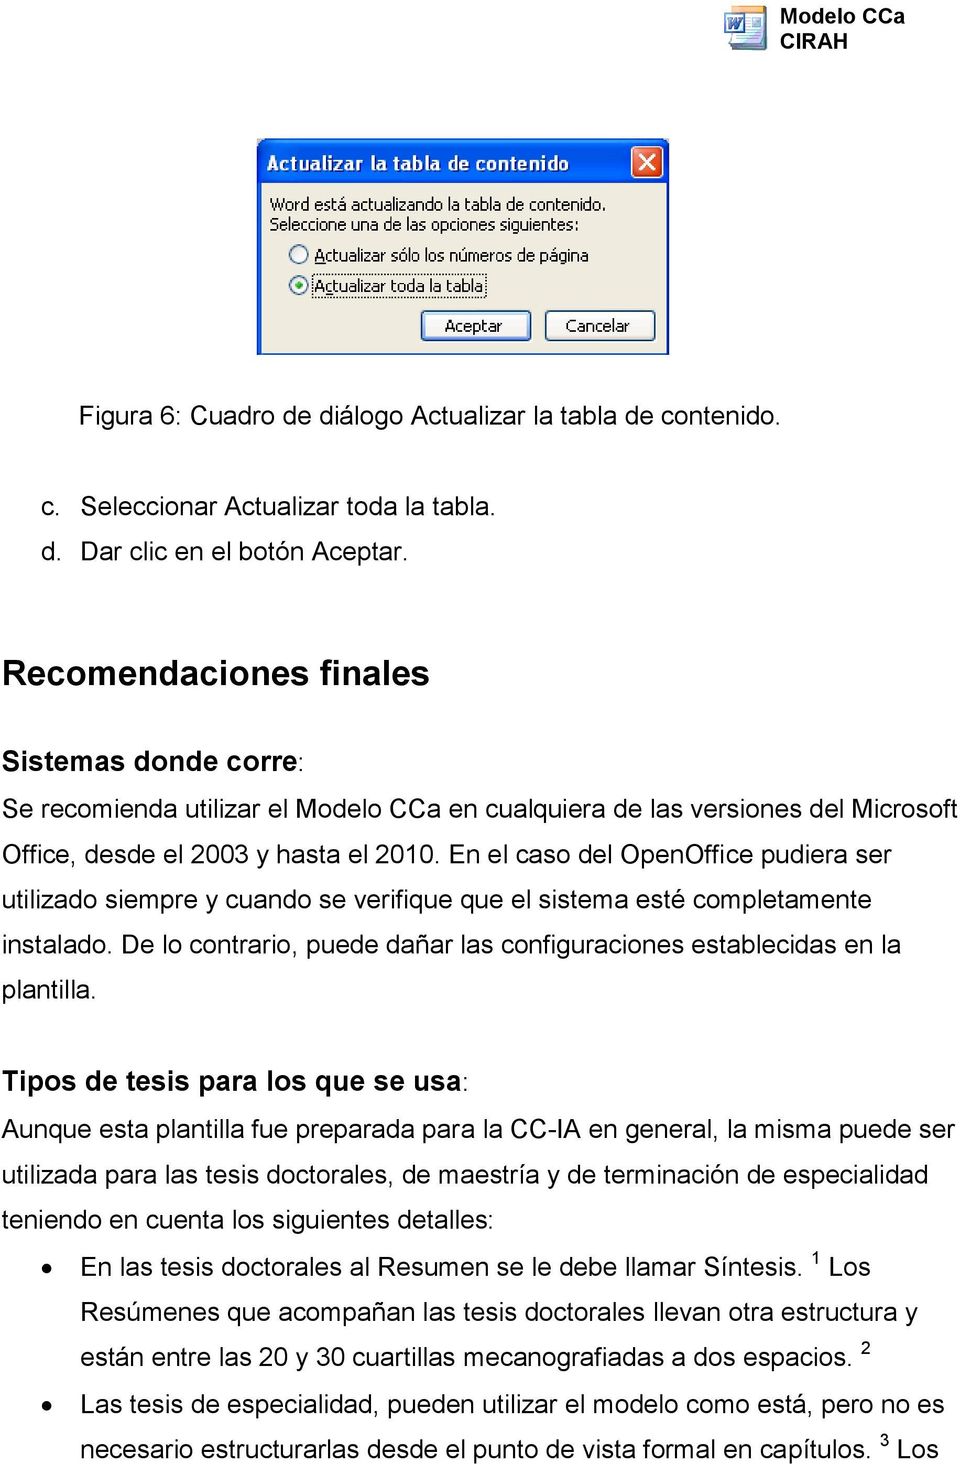 En el caso del OpenOffice pudiera ser utilizado siempre y cuando se verifique que el sistema esté completamente instalado.